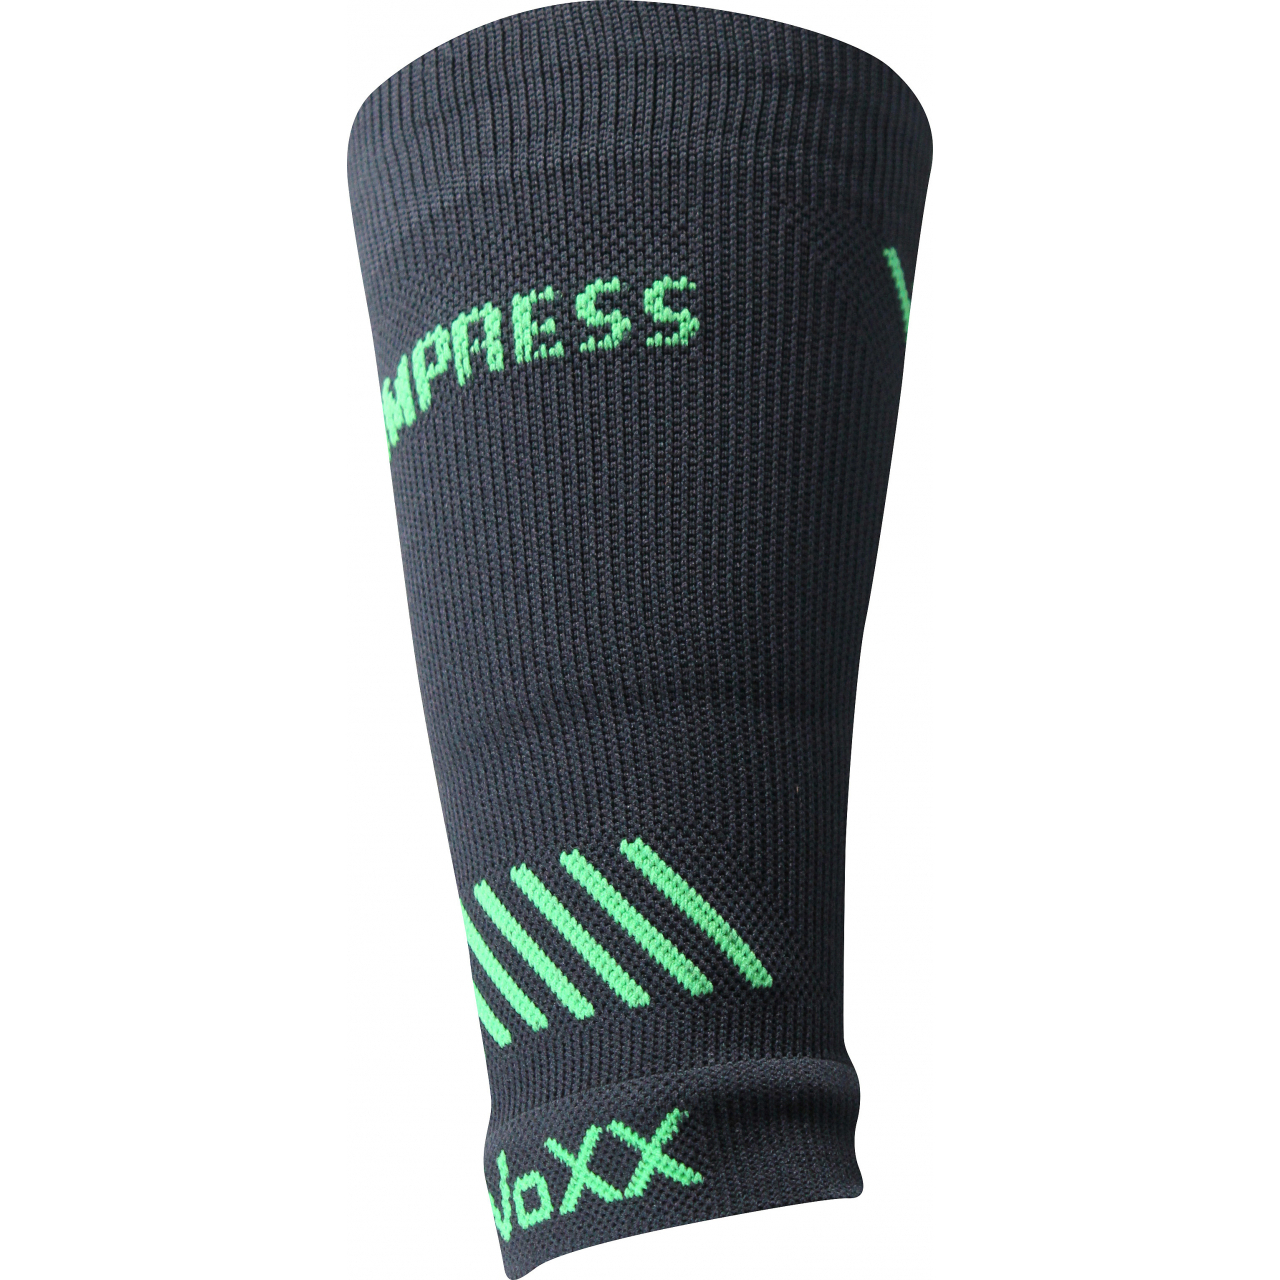 Návlek kompresní Voxx Protect zápěstí - tmavě šedý, L/XL